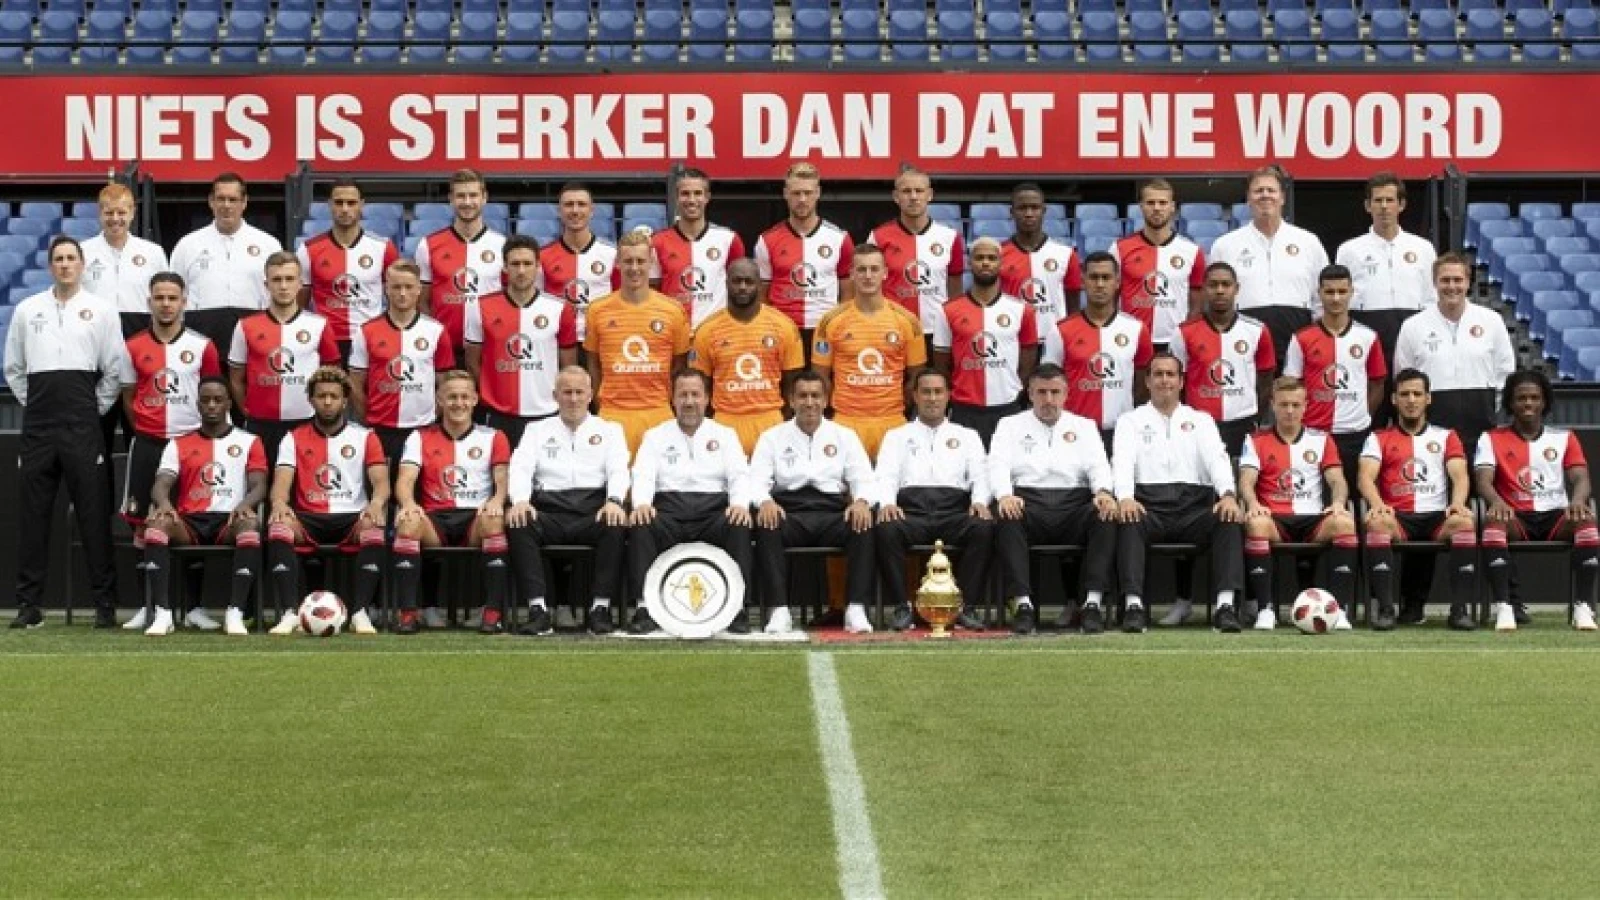 'Plek drie is leuk, maar steeds minder fijn voor Feyenoord'